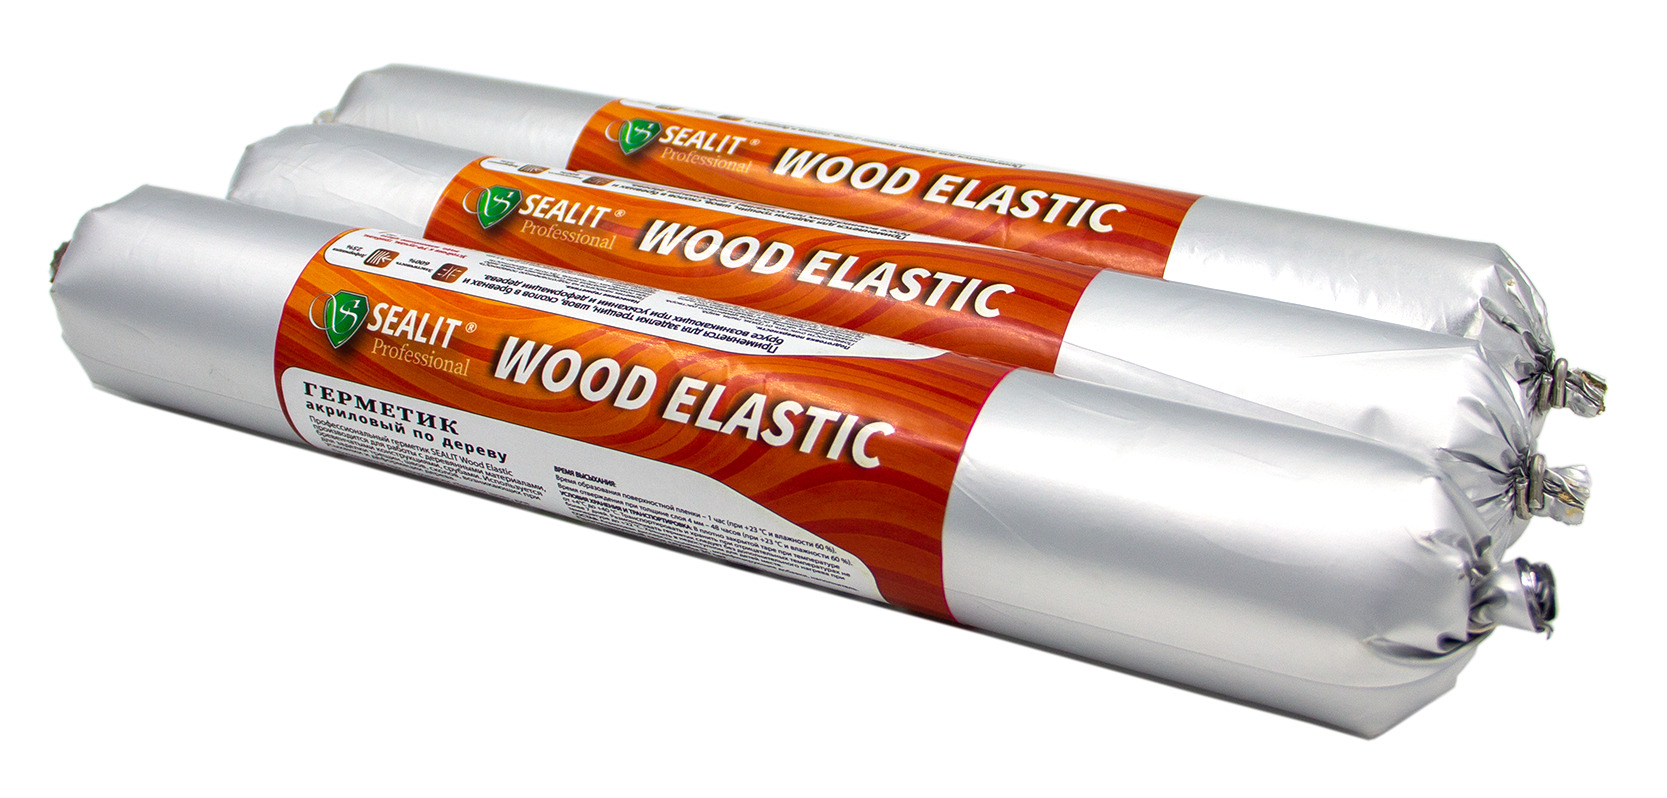 Герметик для дерева акриловый Sealit Wood Elastic, теплый шов, 900 гр, Бук